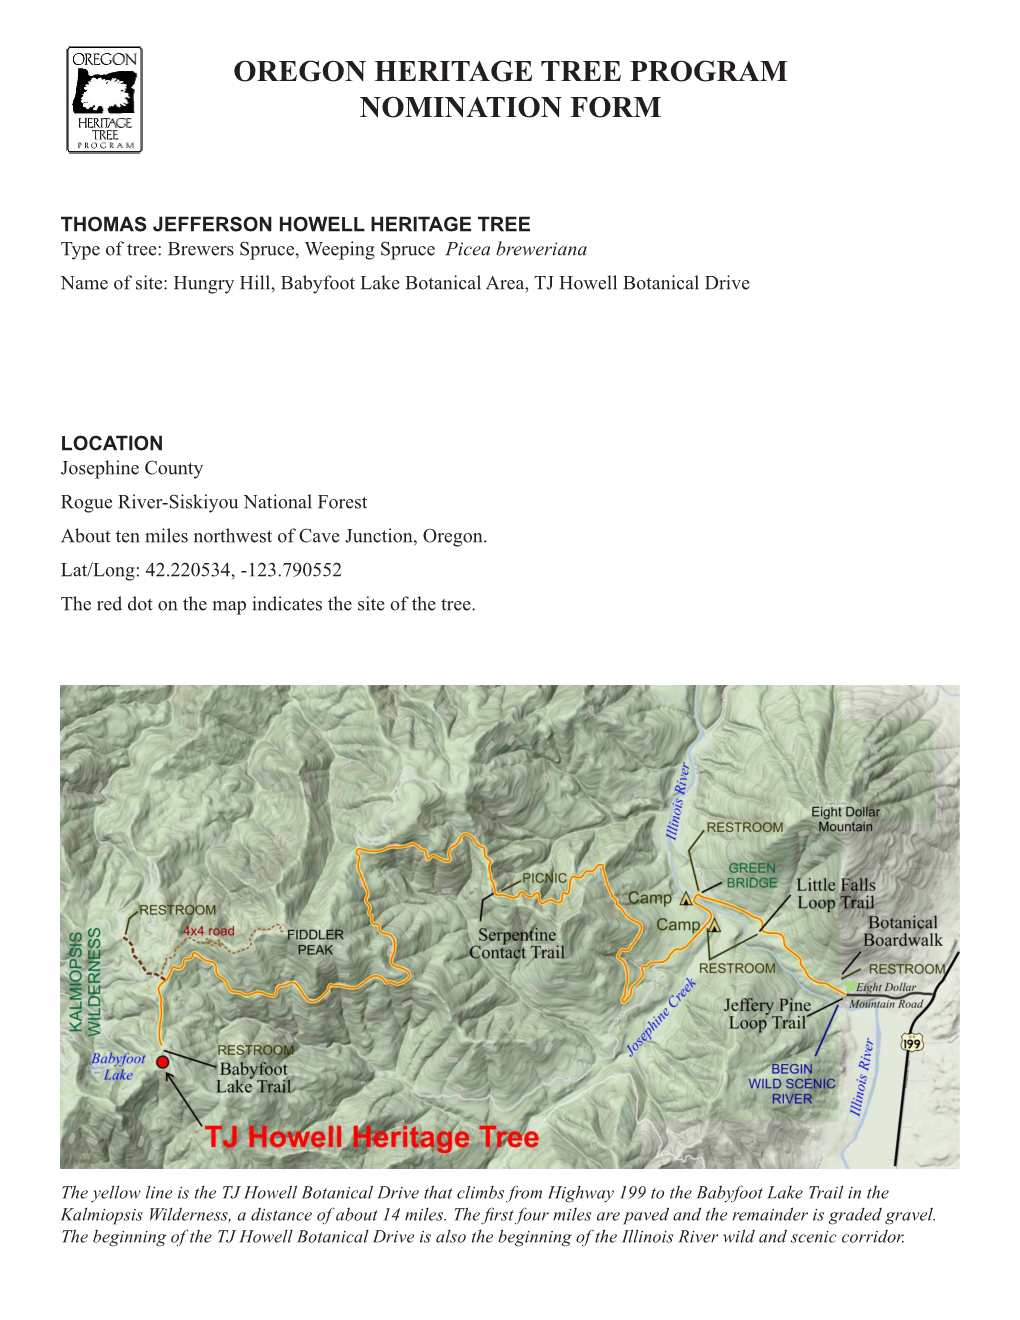 TJ Howell Oregon State Heritage Tree Nomination